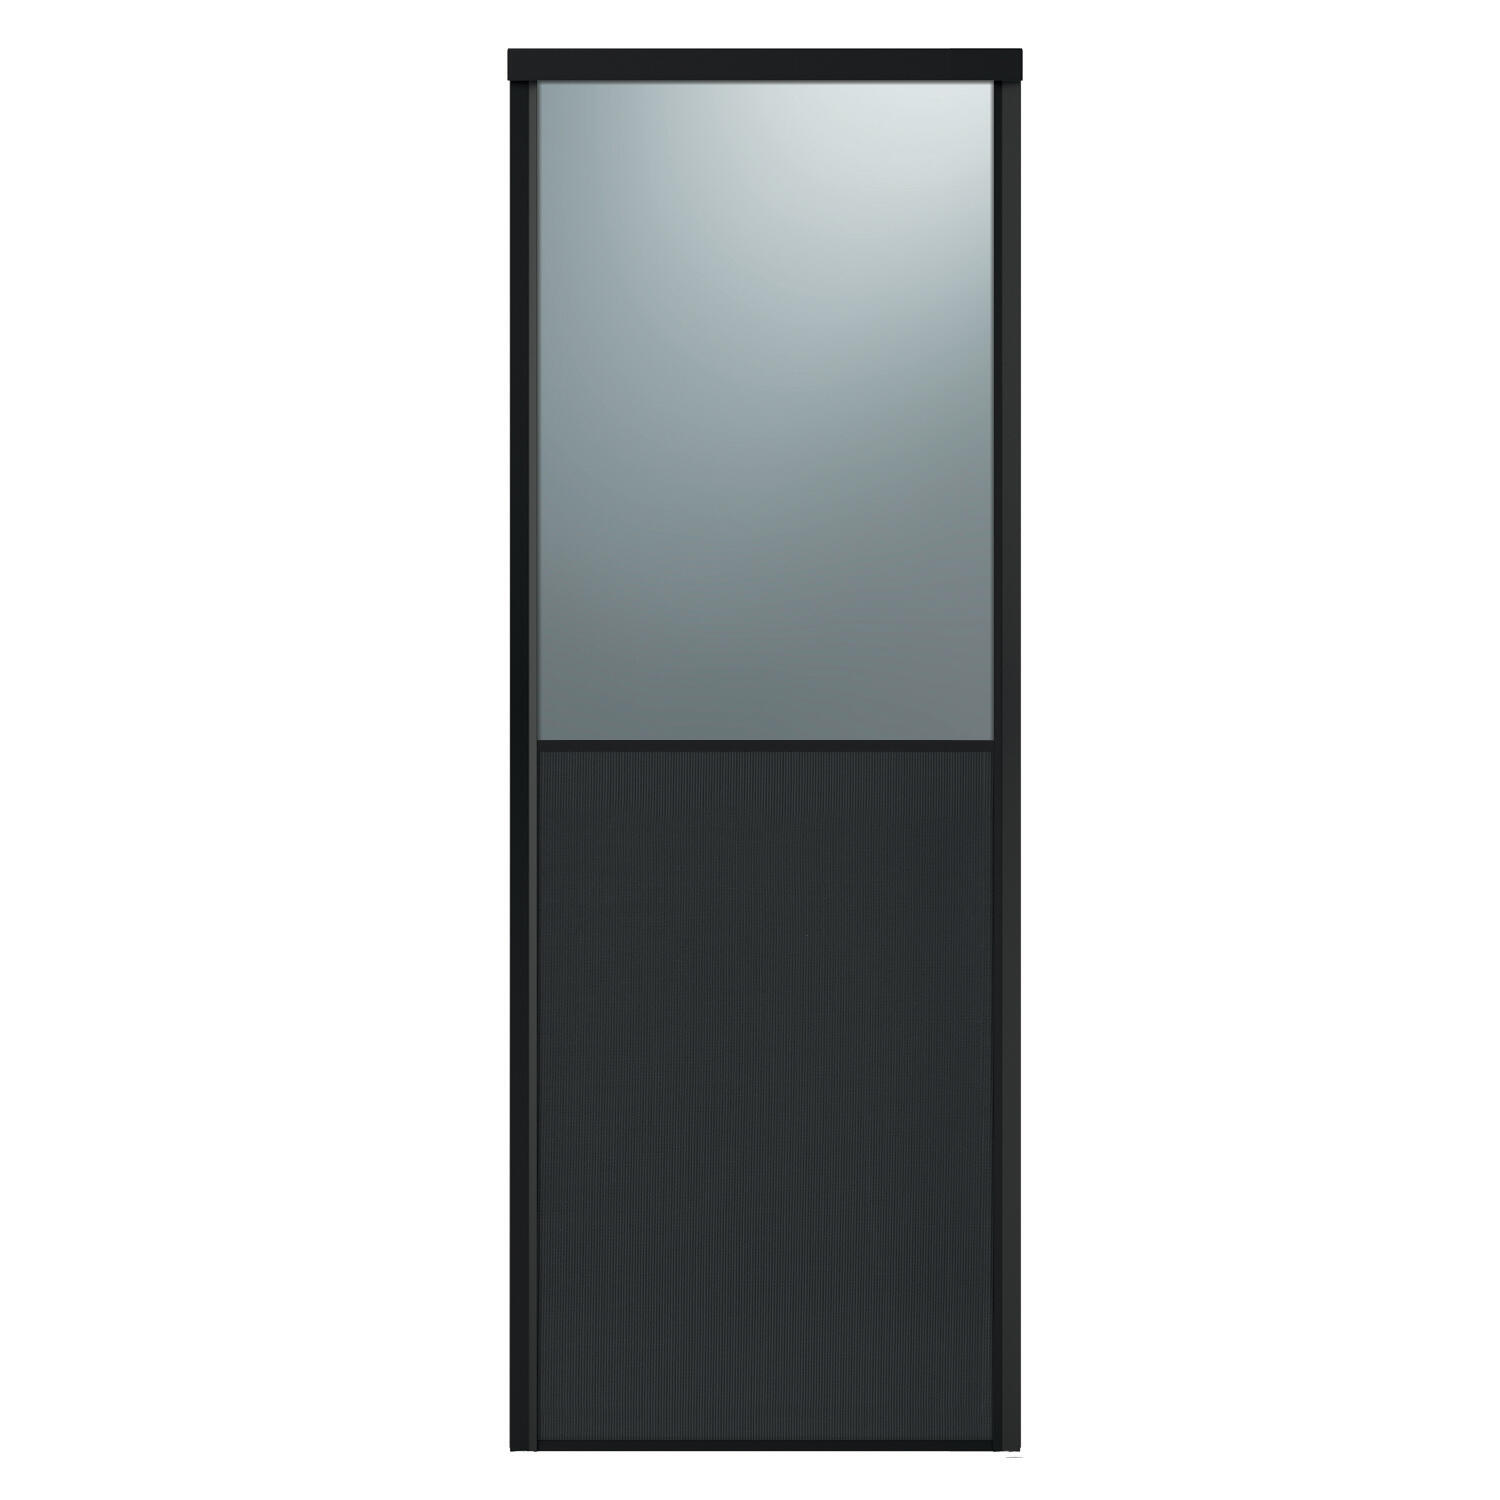 Façade de placard coulissante 2 portes effet cuir carbone, miroir